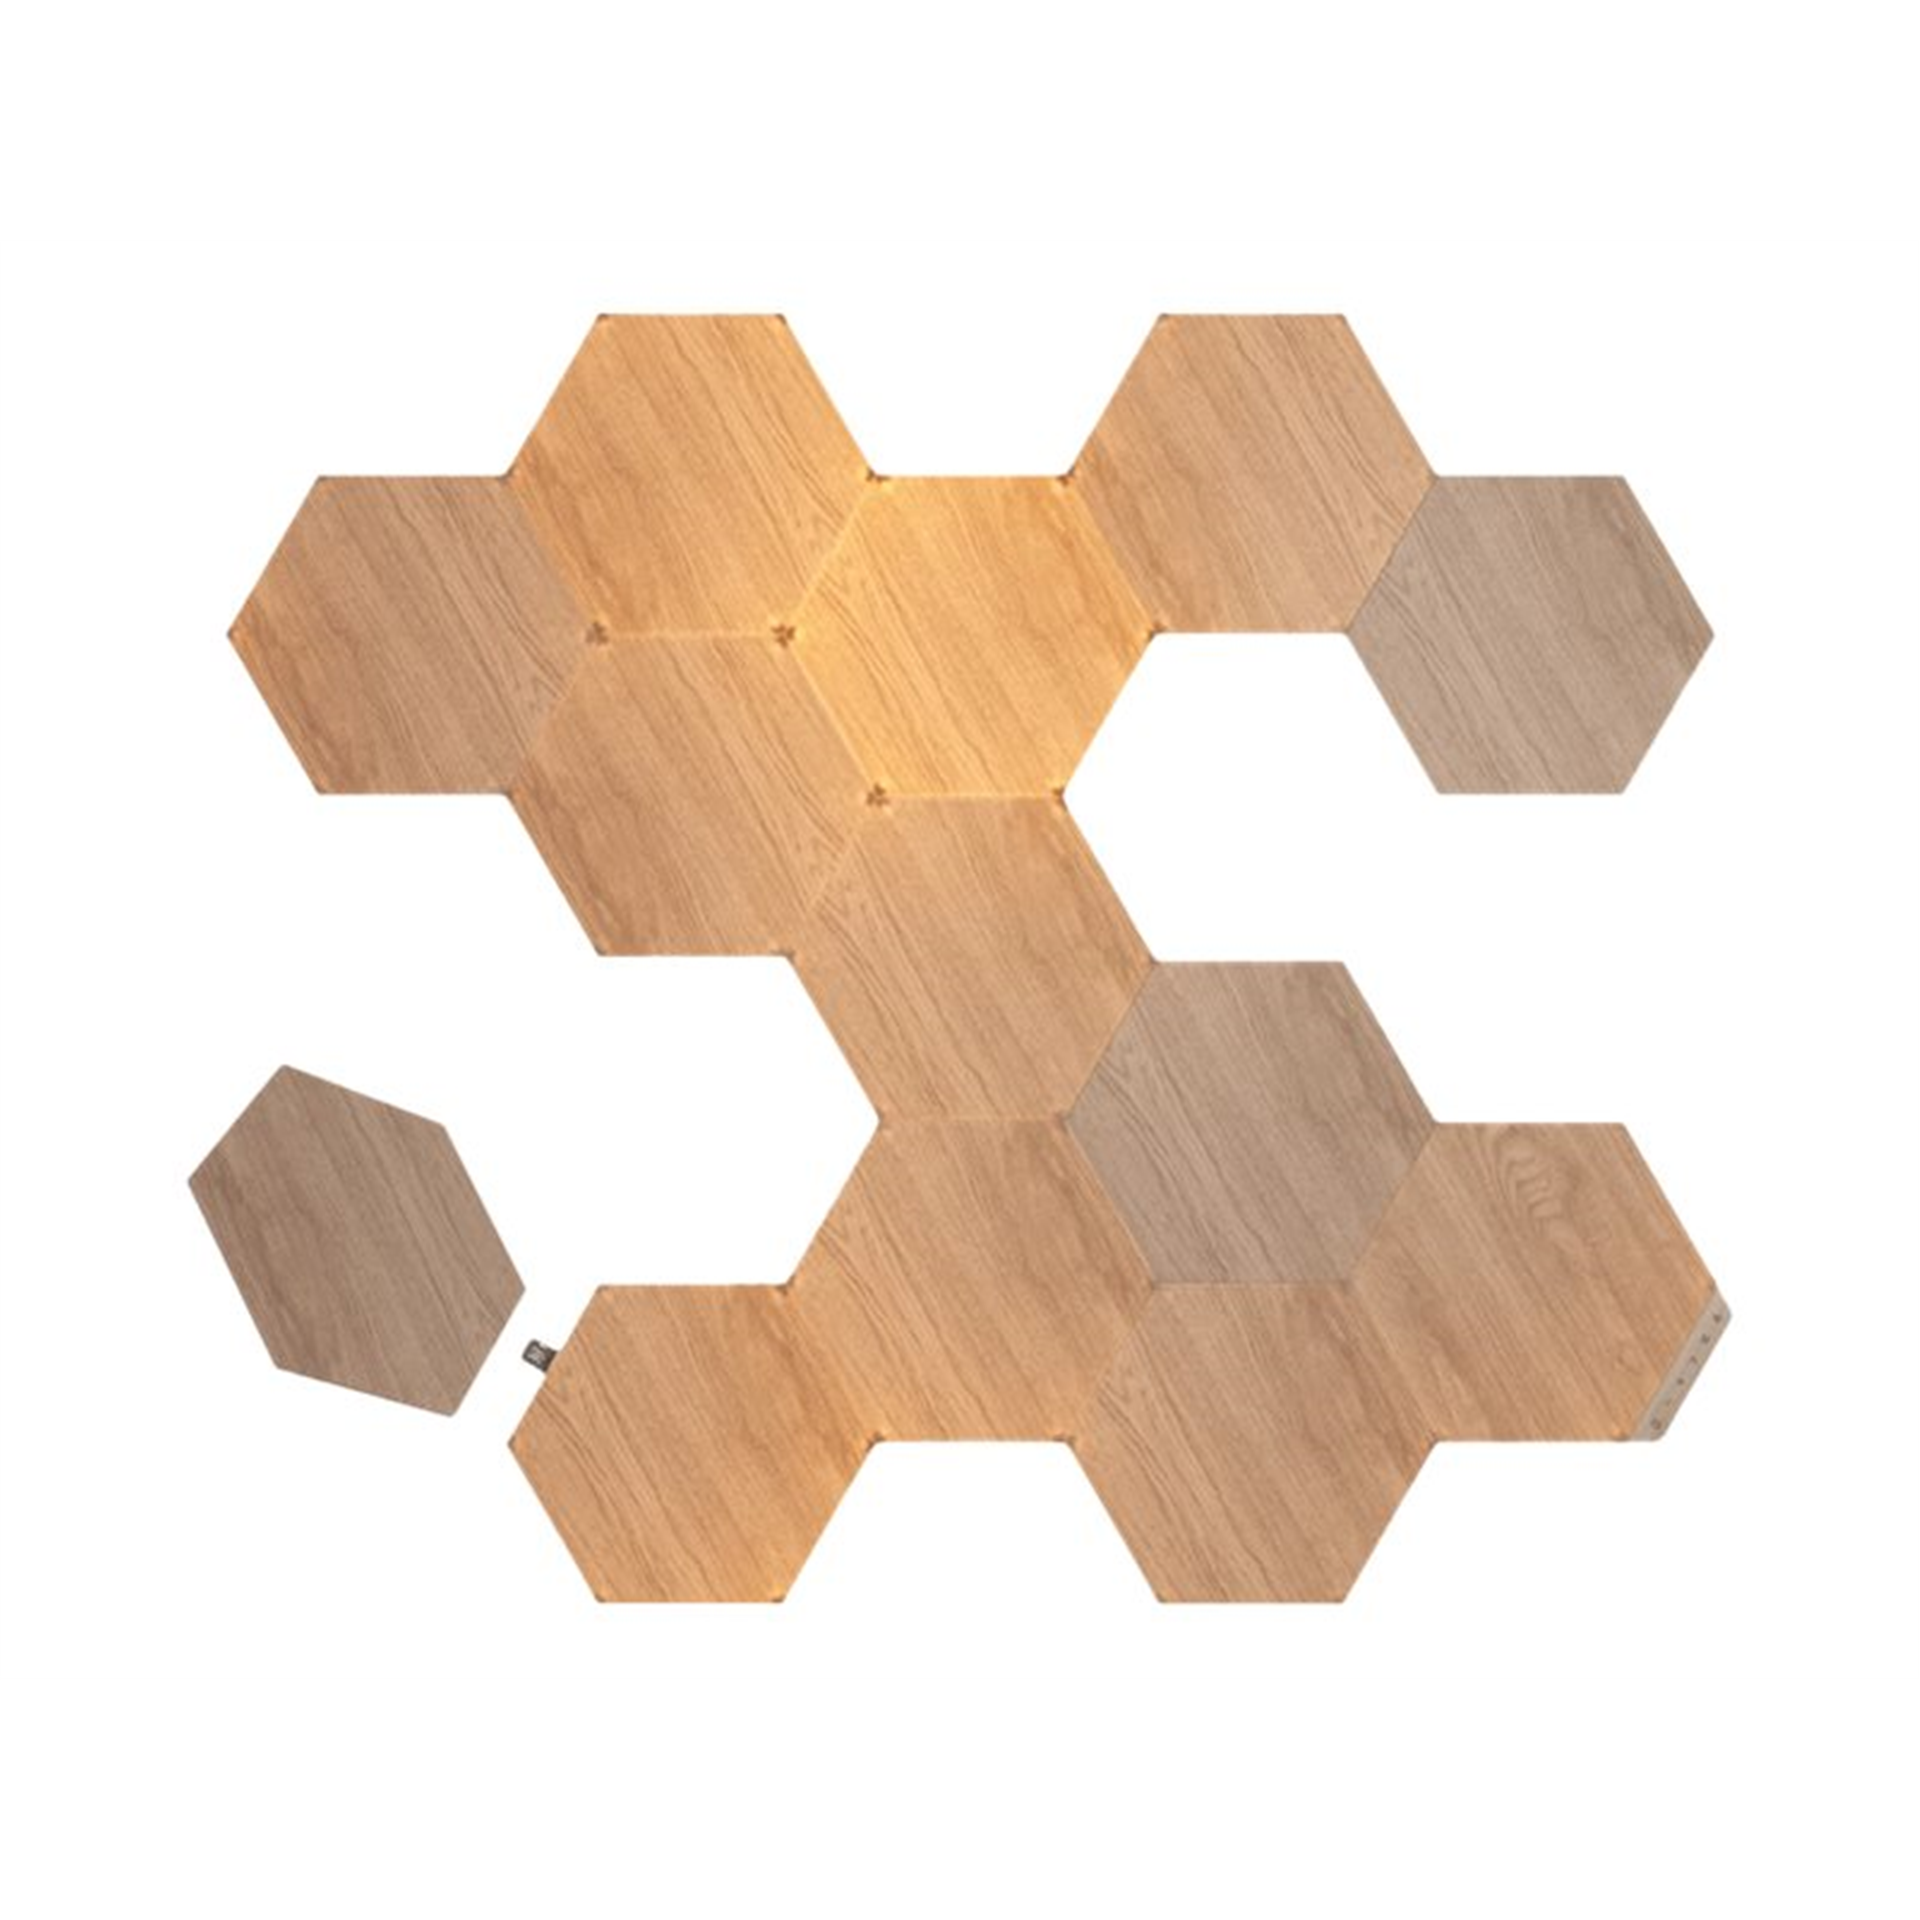 Nanoleaf Elements Wood Look Hexagons Starter Kit (13 panels) Nanoleaf Elements Wood Look Hexagons Starter Kit (13 panels) Cool White + Warm White